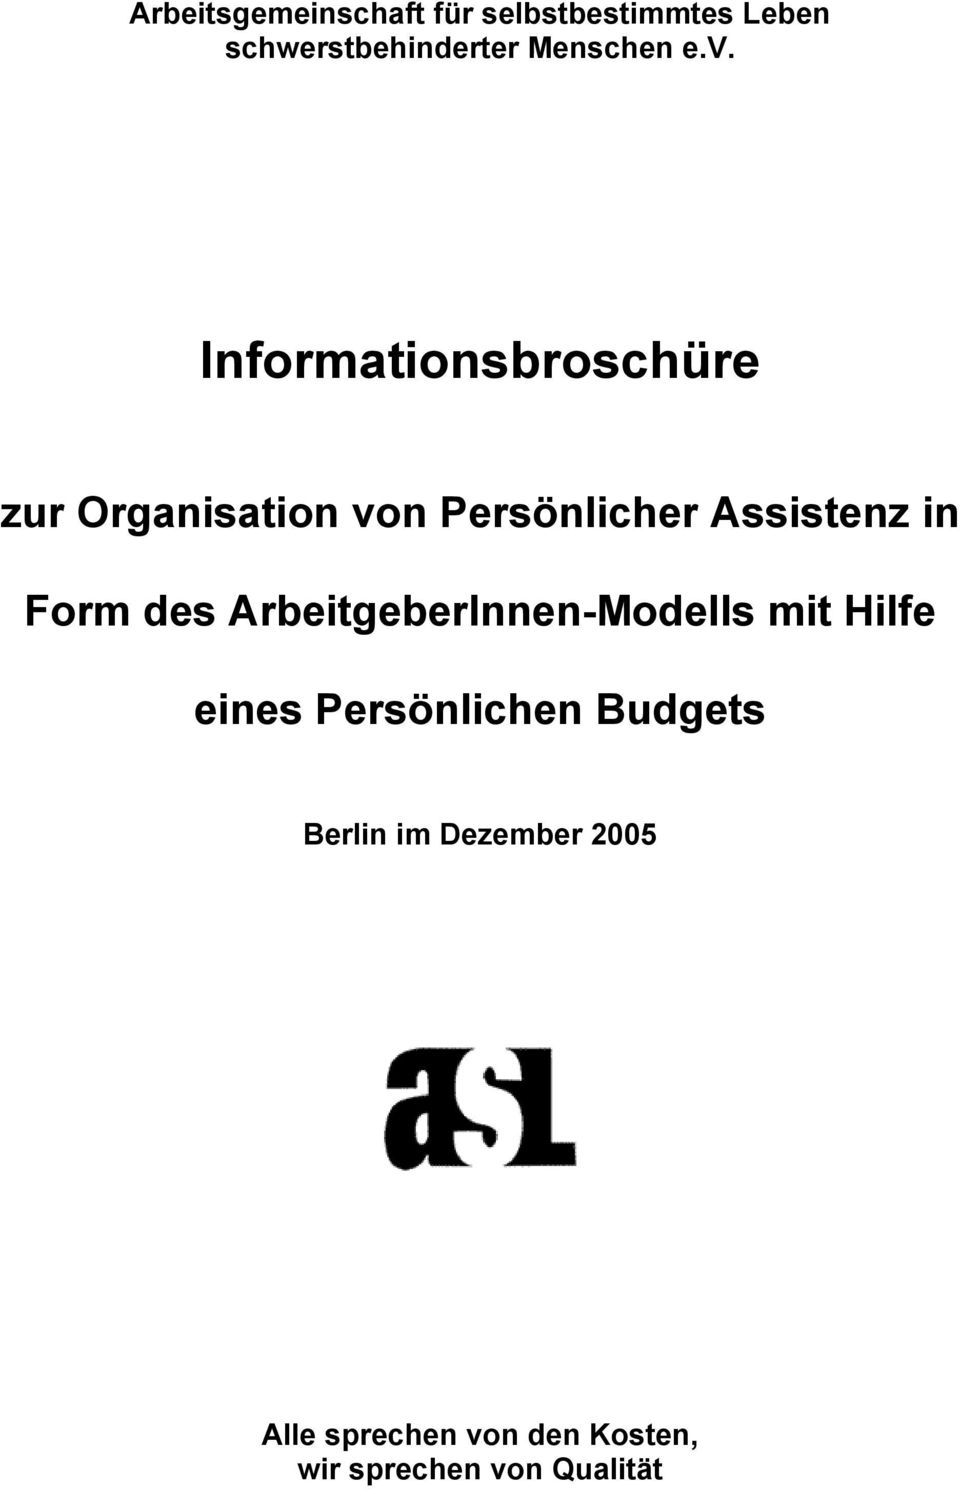 Informationsbroschüre zur Organisation von Persönlicher Assistenz in Form